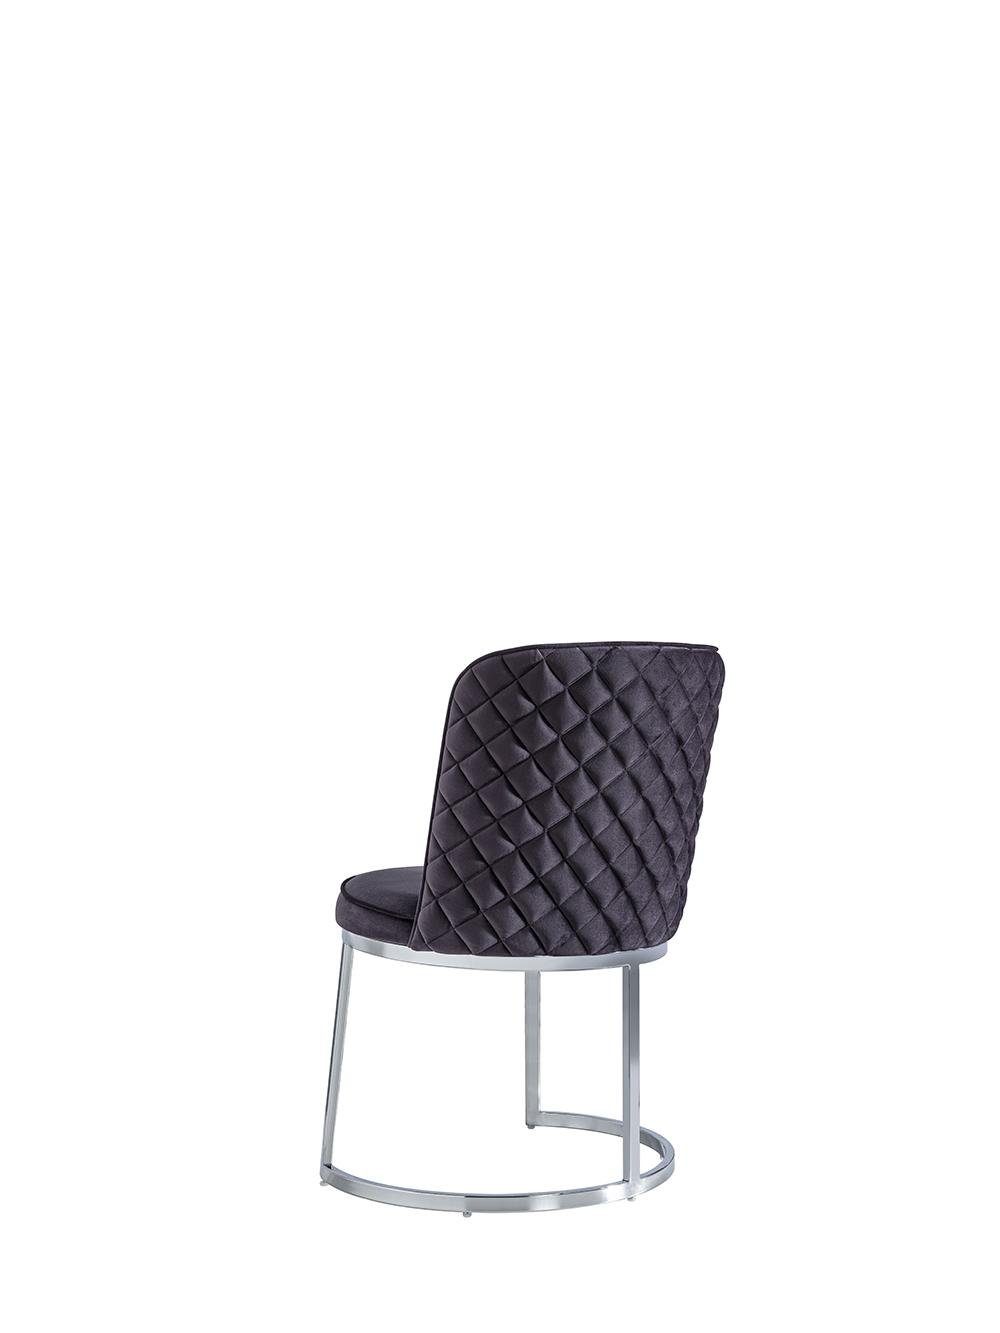 Möbel Made Esszimmer Luxus Neu JVmoebel (1 Design Esszimmerstuhl Europa Moderne Stühle Einrichtung St), Stuhl in